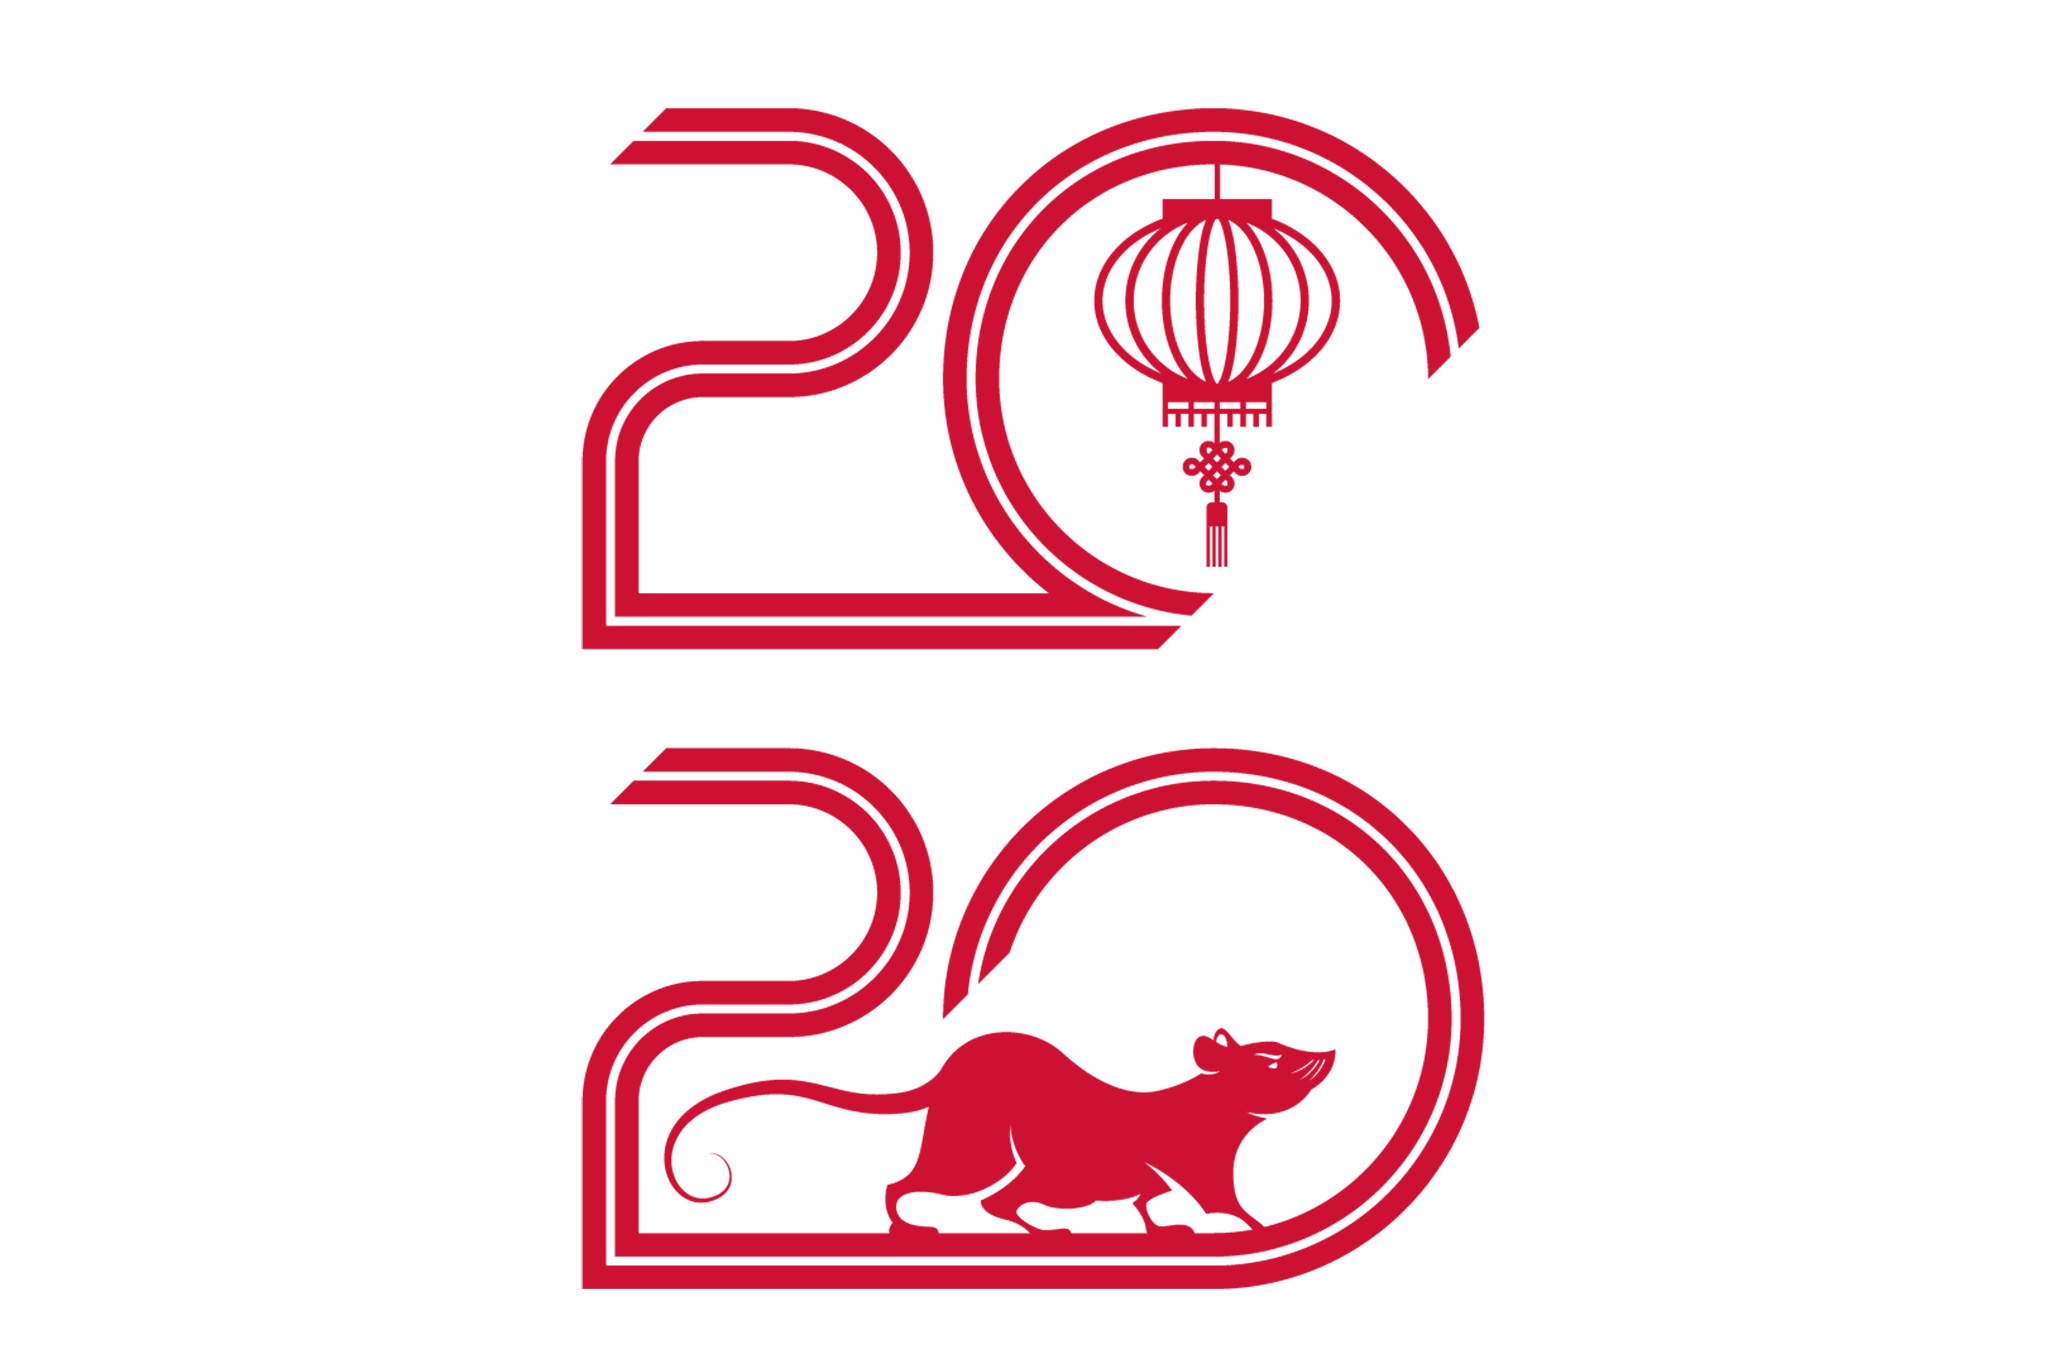 Lunar New Year 20202048 x 1365